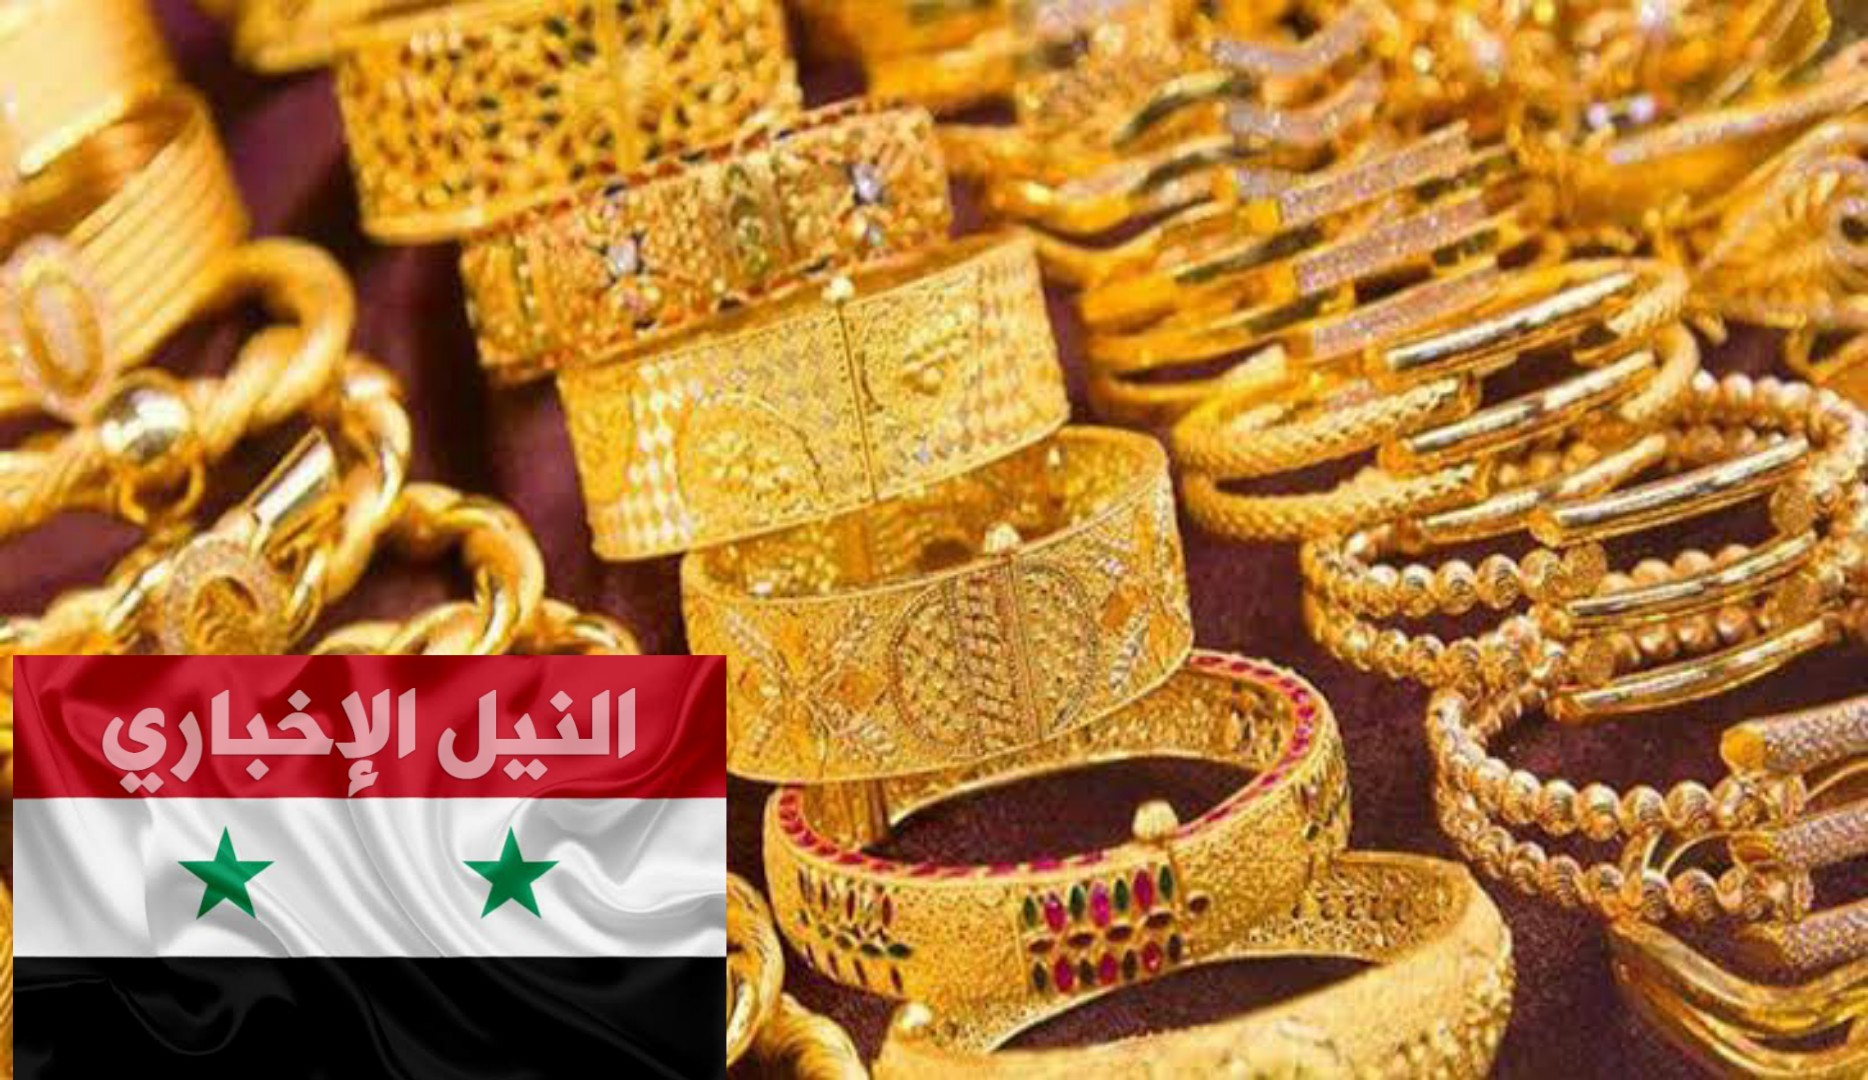 سعر الذهب في سوريا اليوم لحظة بلحظة الأحد 19-1-2020 في أسواق المال